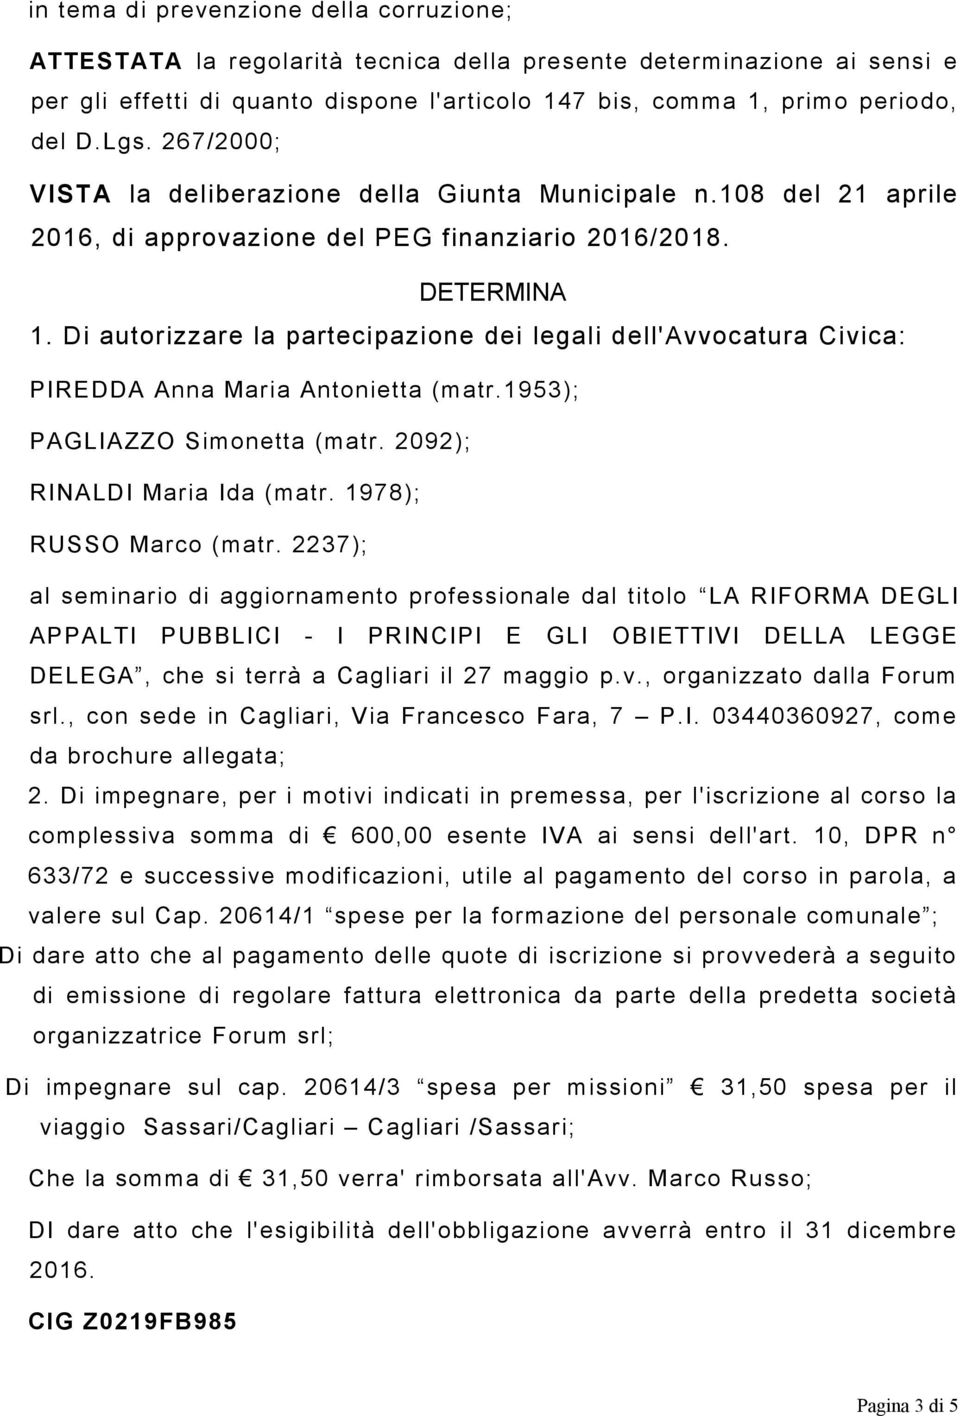 Di autorizzare la partecipazione dei legali dell'avvocatura Civica: PIREDDA Anna Maria Antonietta (matr.1953); PAGLIAZZO Simonetta (matr. 2092); RINALDI Maria Ida (matr. 1978); RUSSO Marco (matr.